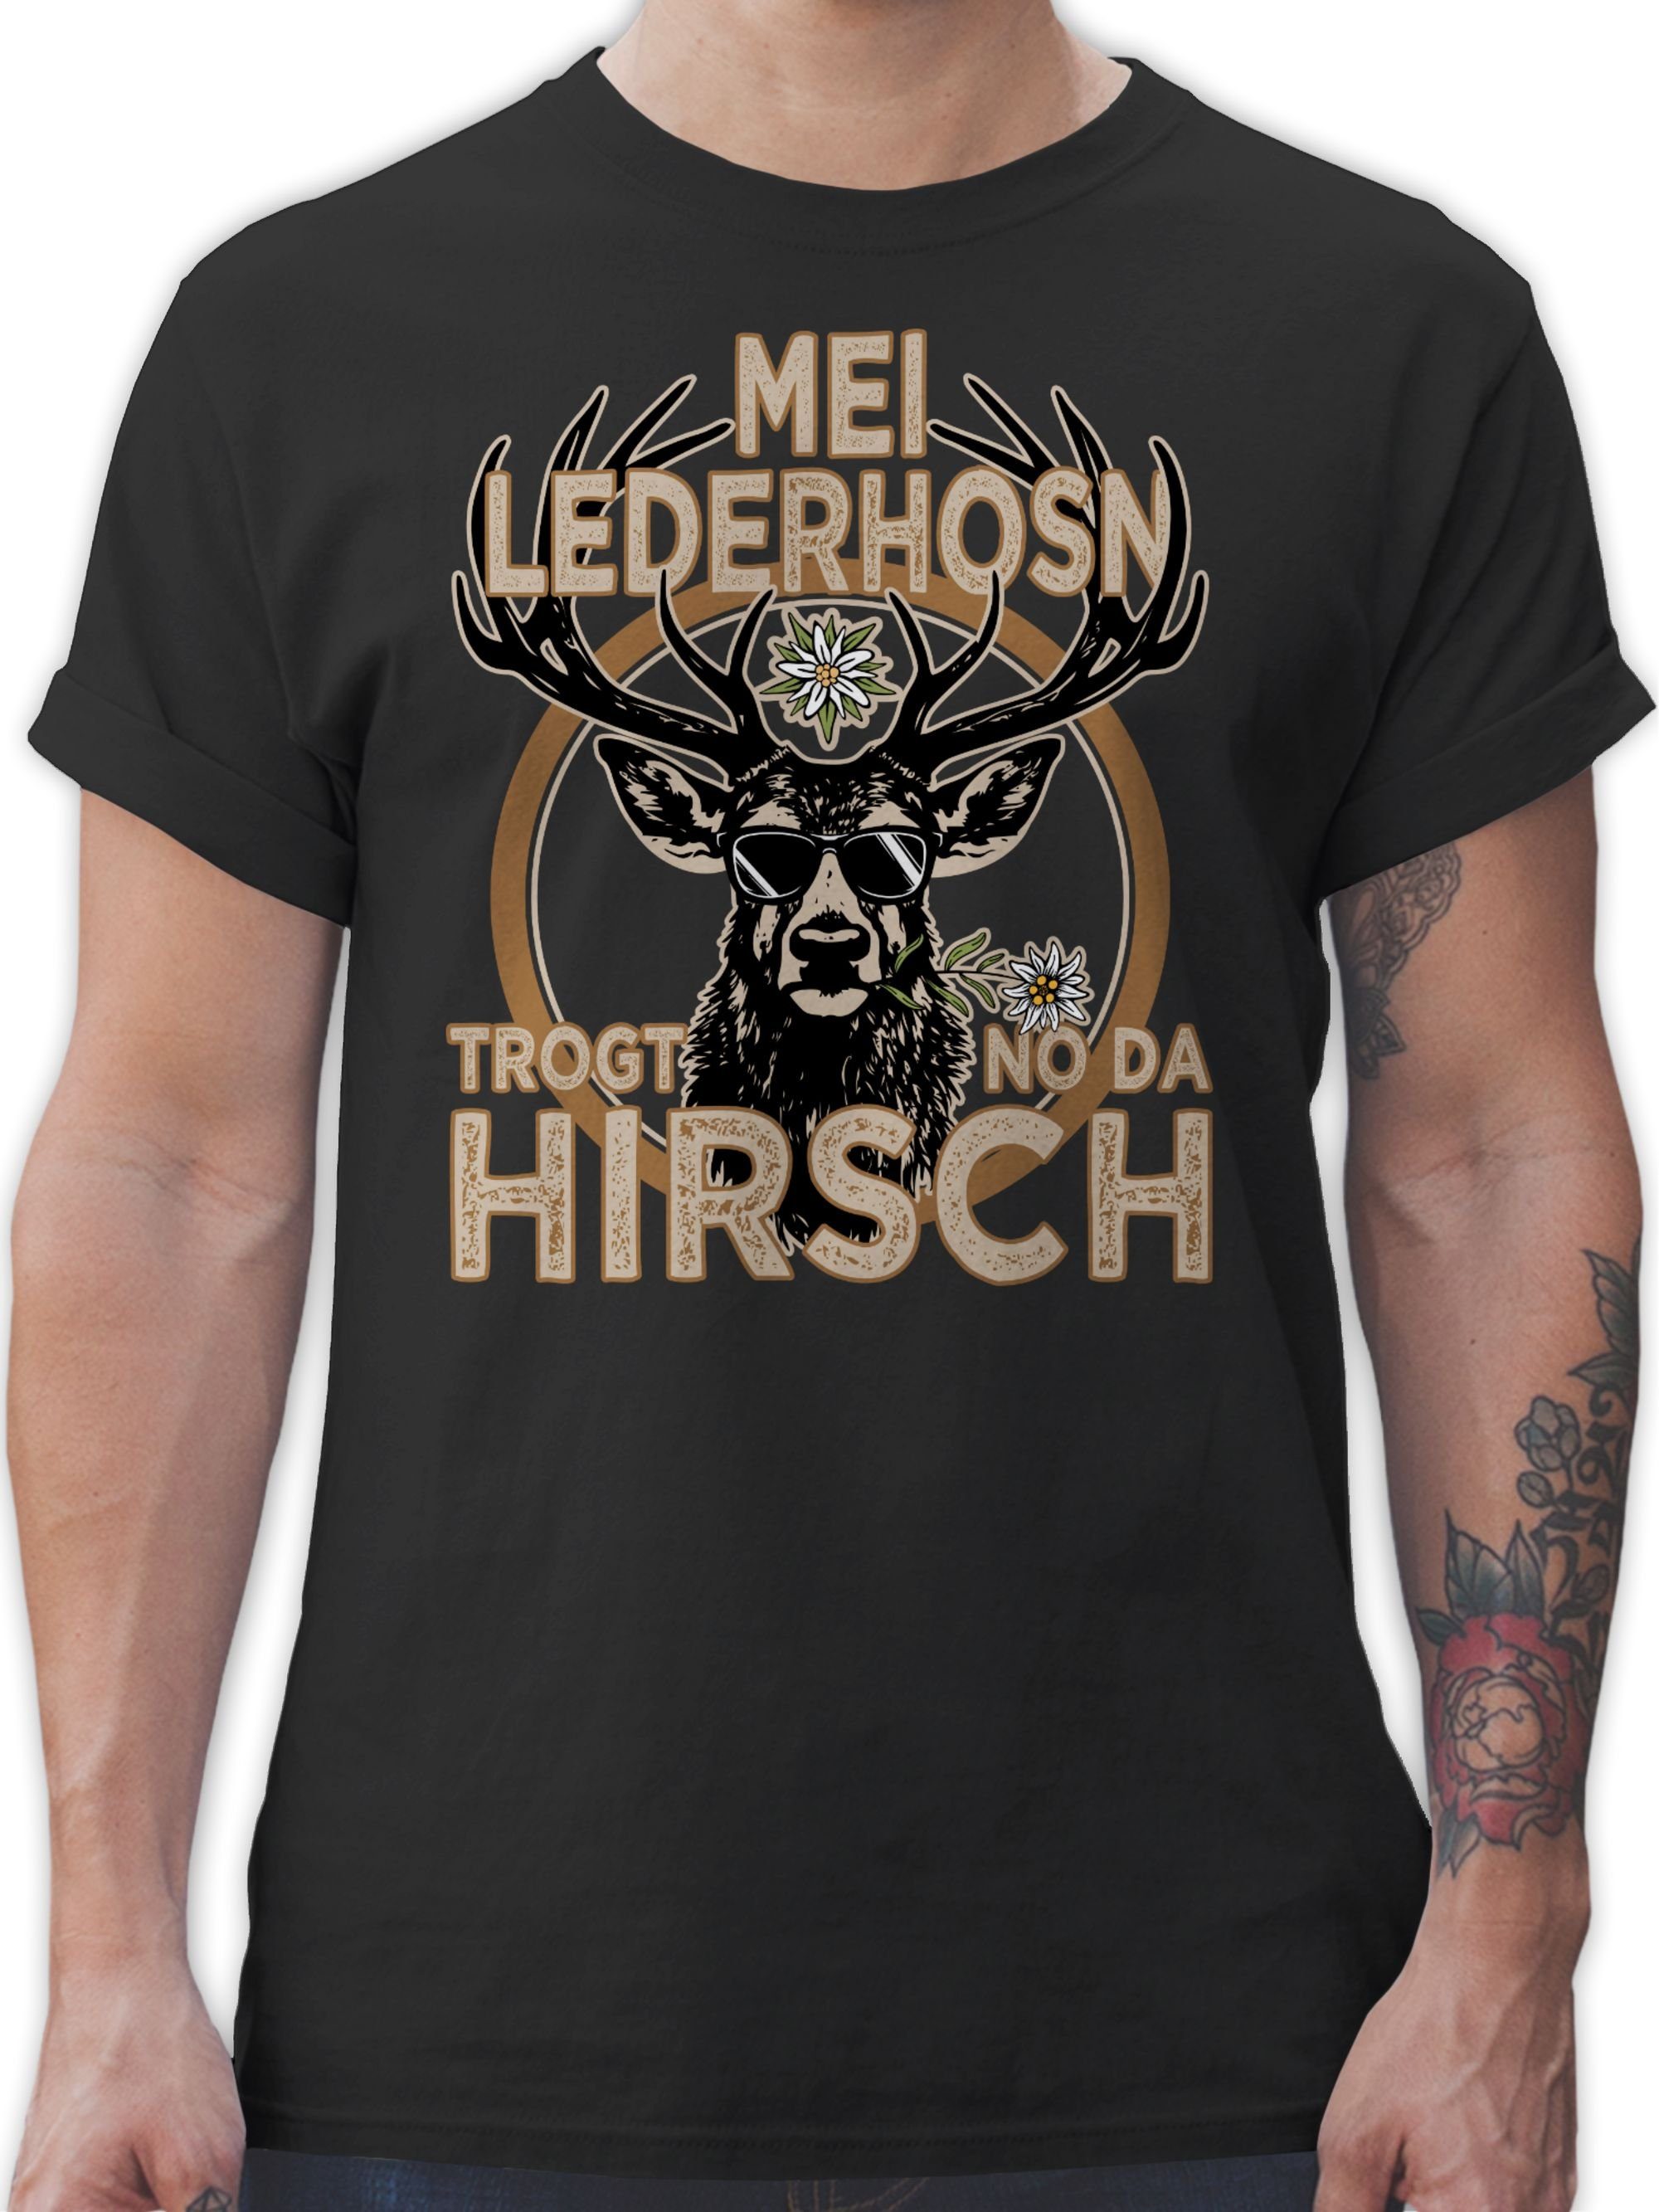 Shirtracer T-Shirt Trachten Outfit Lederhose Spruch Trägt der Hirsch Mode für Oktoberfest Herren 02 Schwarz